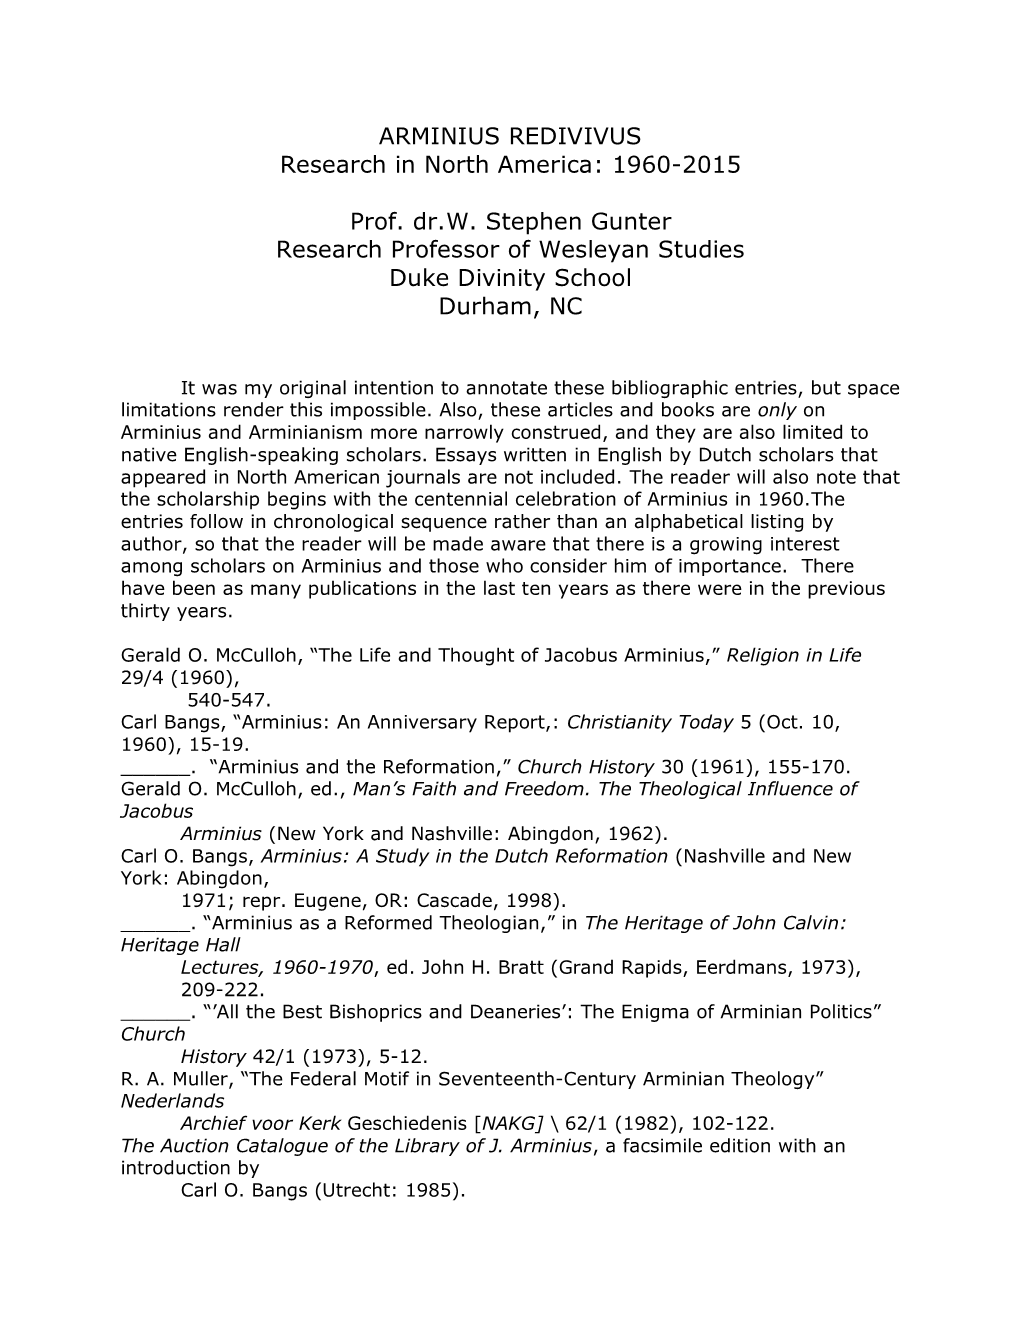 ARMINIUS REDIVIVUS Research in North America: 1960-2015